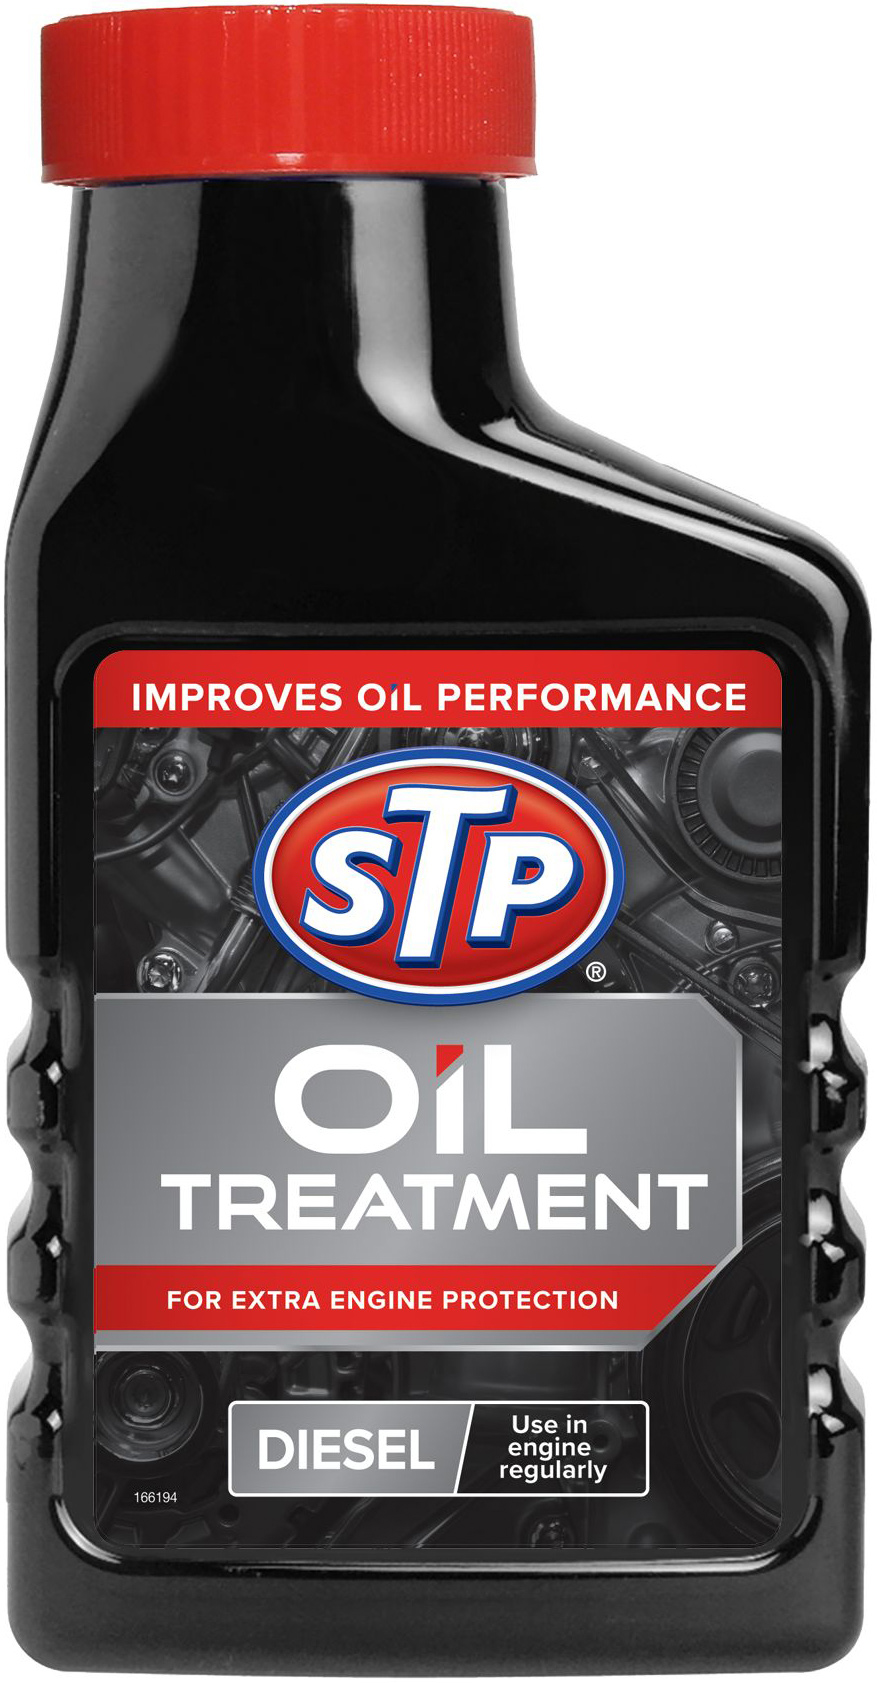  в масло для дизельного двигателя STP Oil Treatment for Diesel .